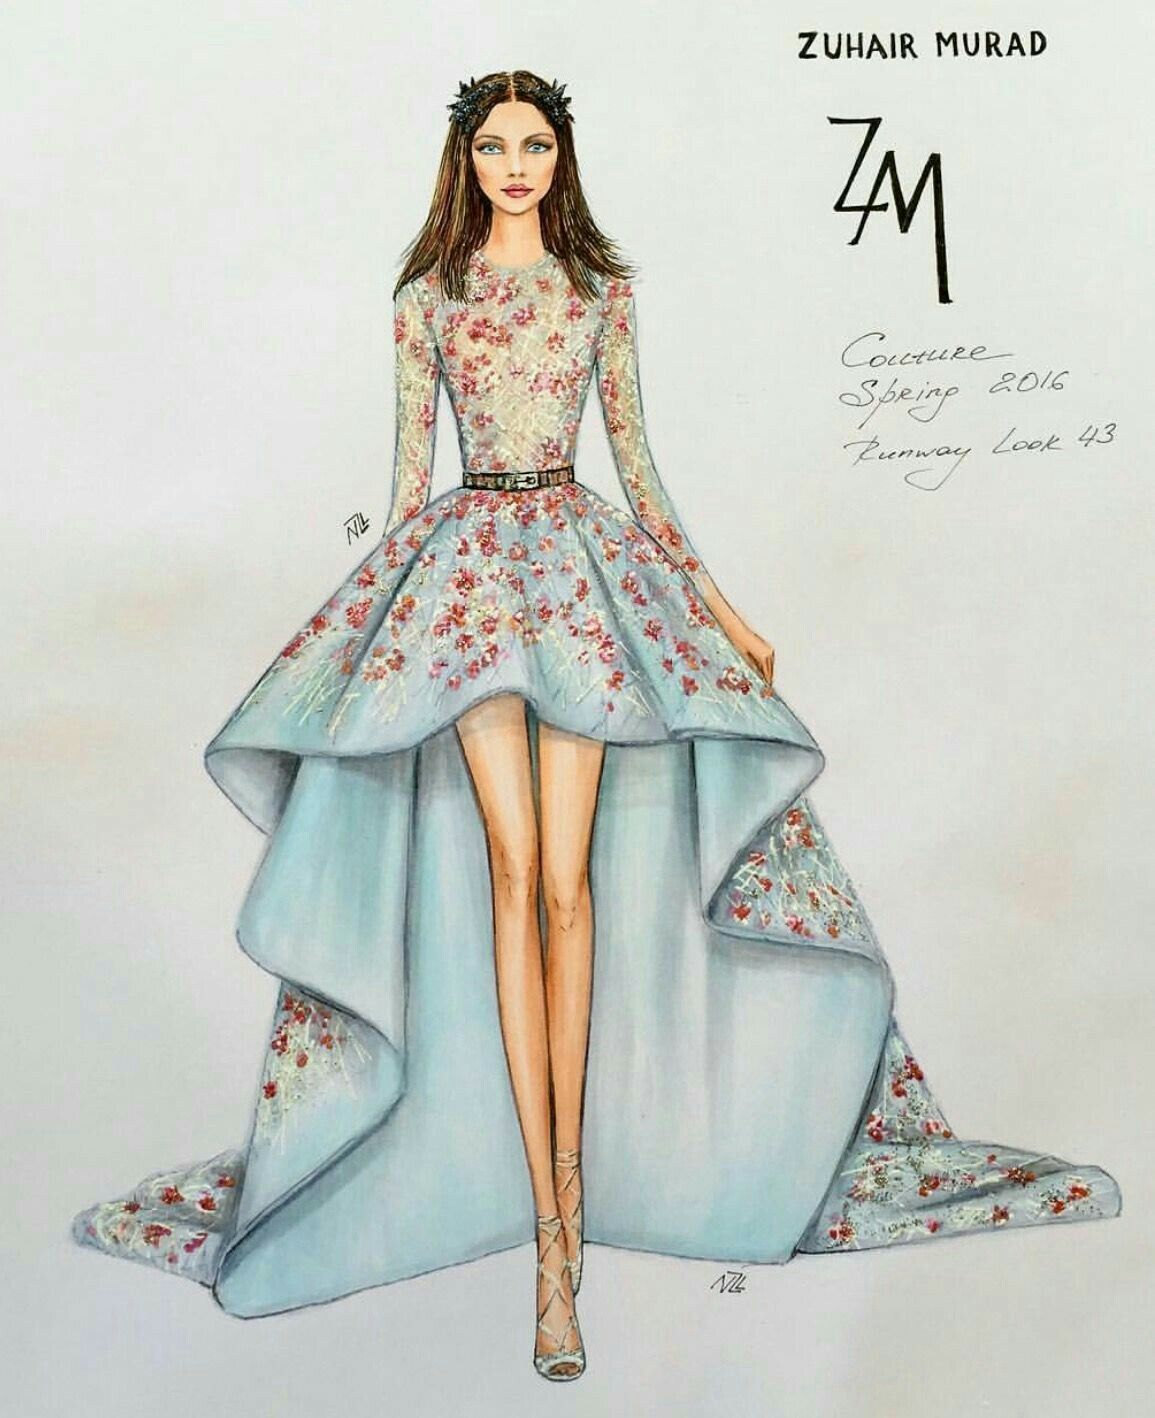 Beautiful dress design drawing - nice | Facebook-saigonsouth.com.vn